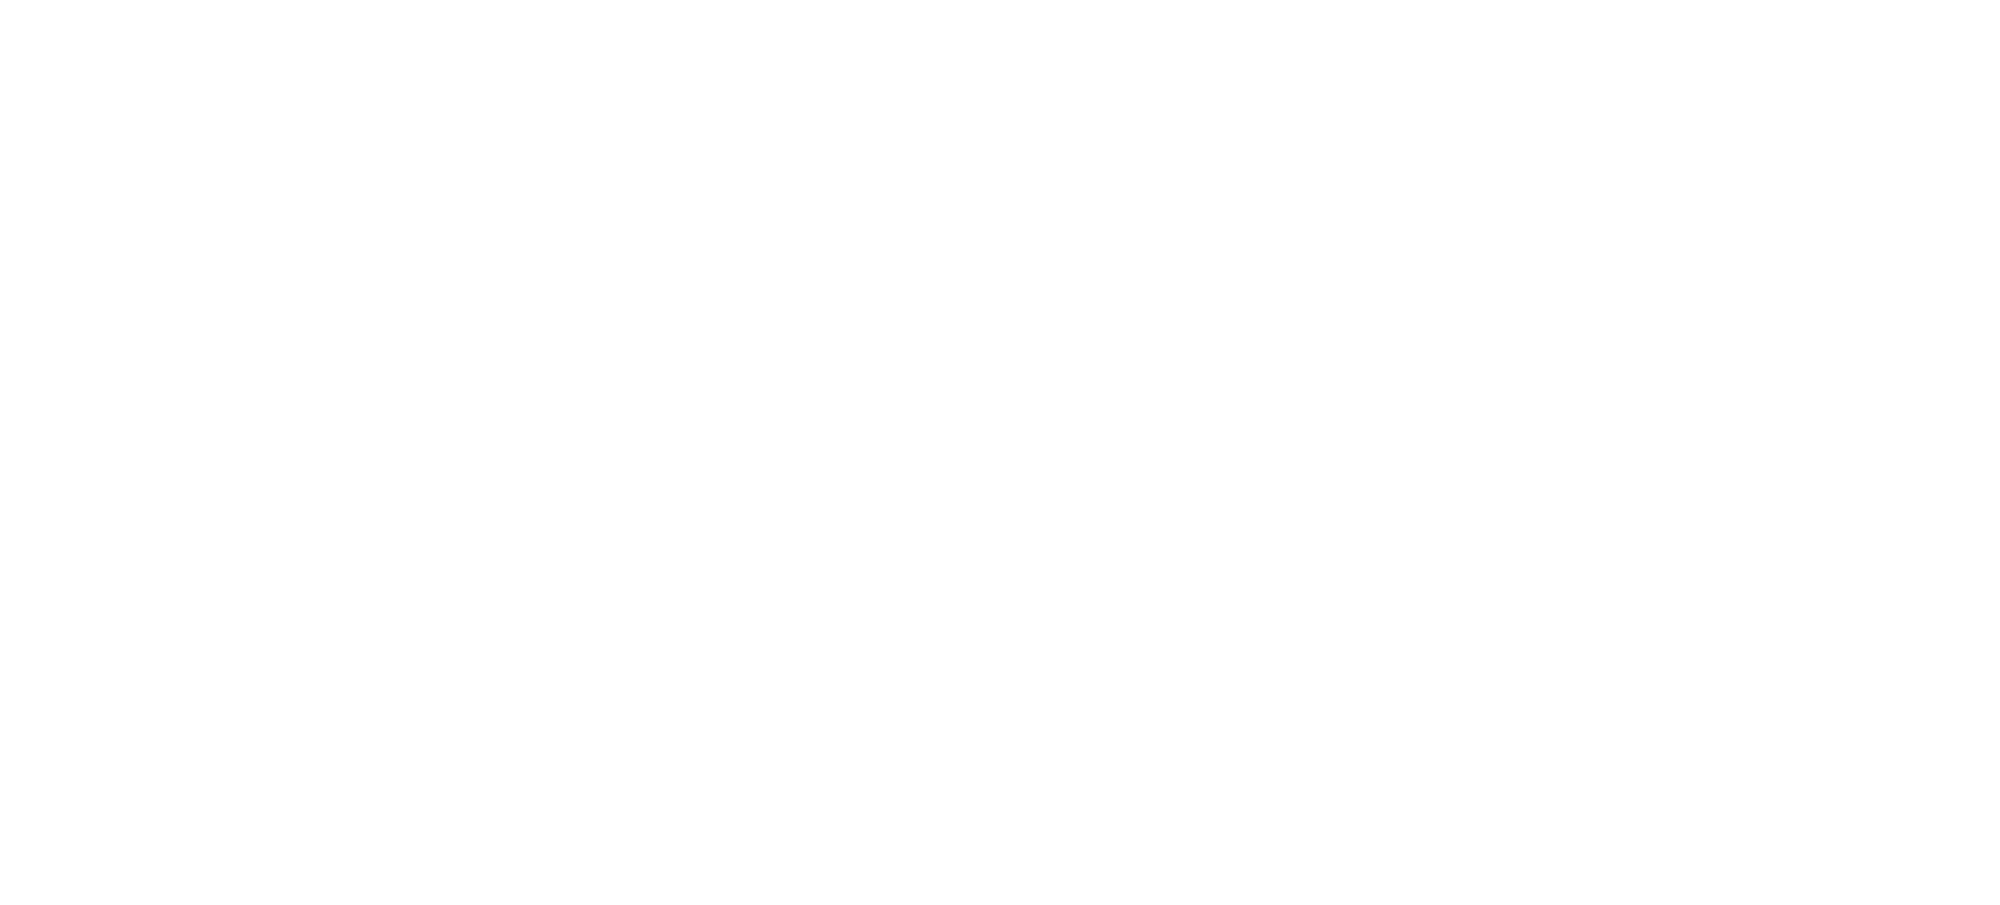 MedVet Masters Coaching, Treinamentos e Desenvolvimento Humano LTDA